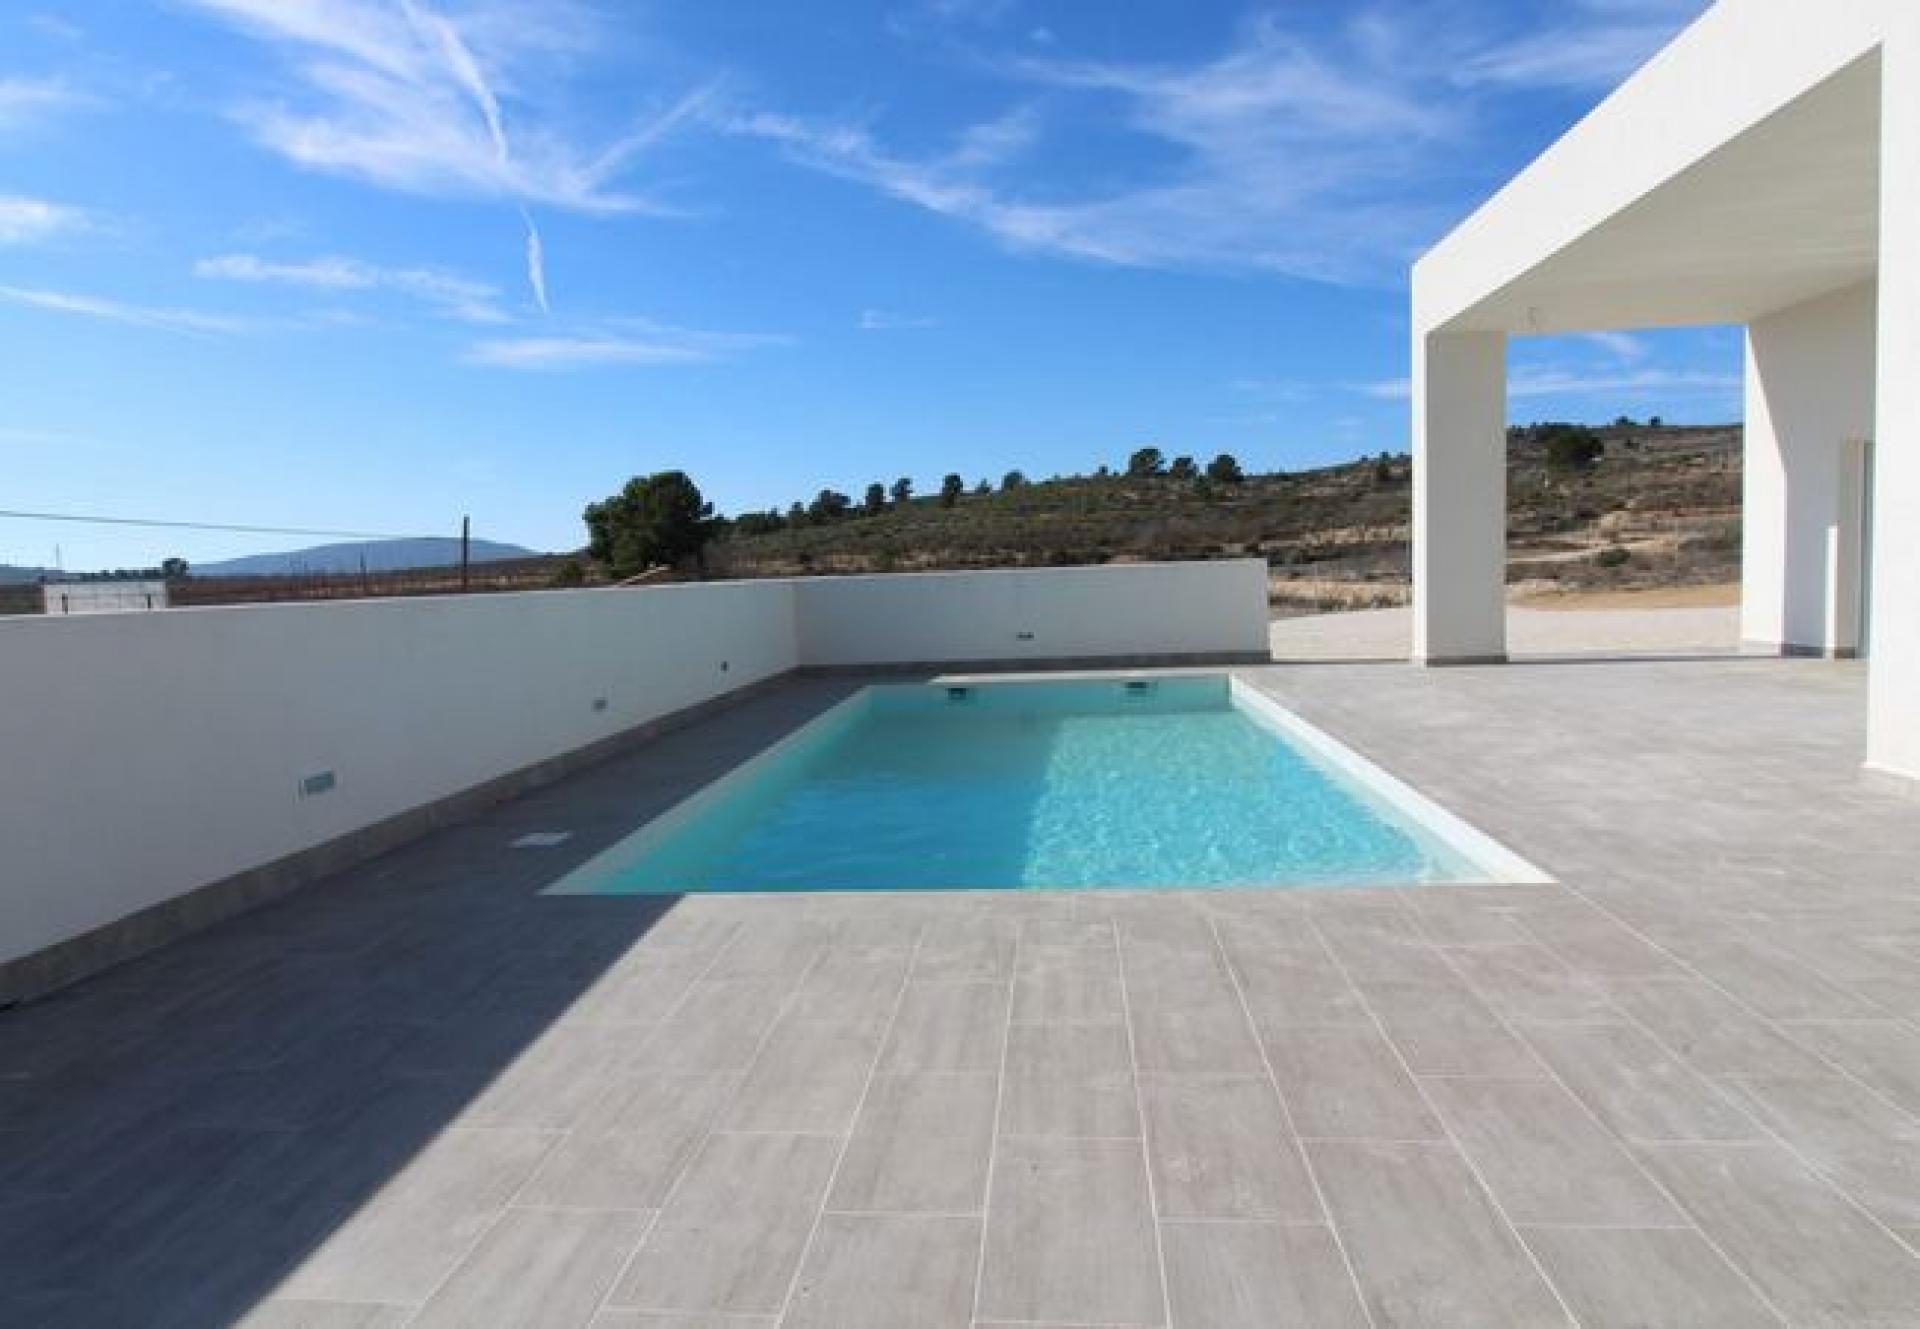 Haus - Villa zum Bau an der Costa Blanca - Spanien in Medvilla Spanje